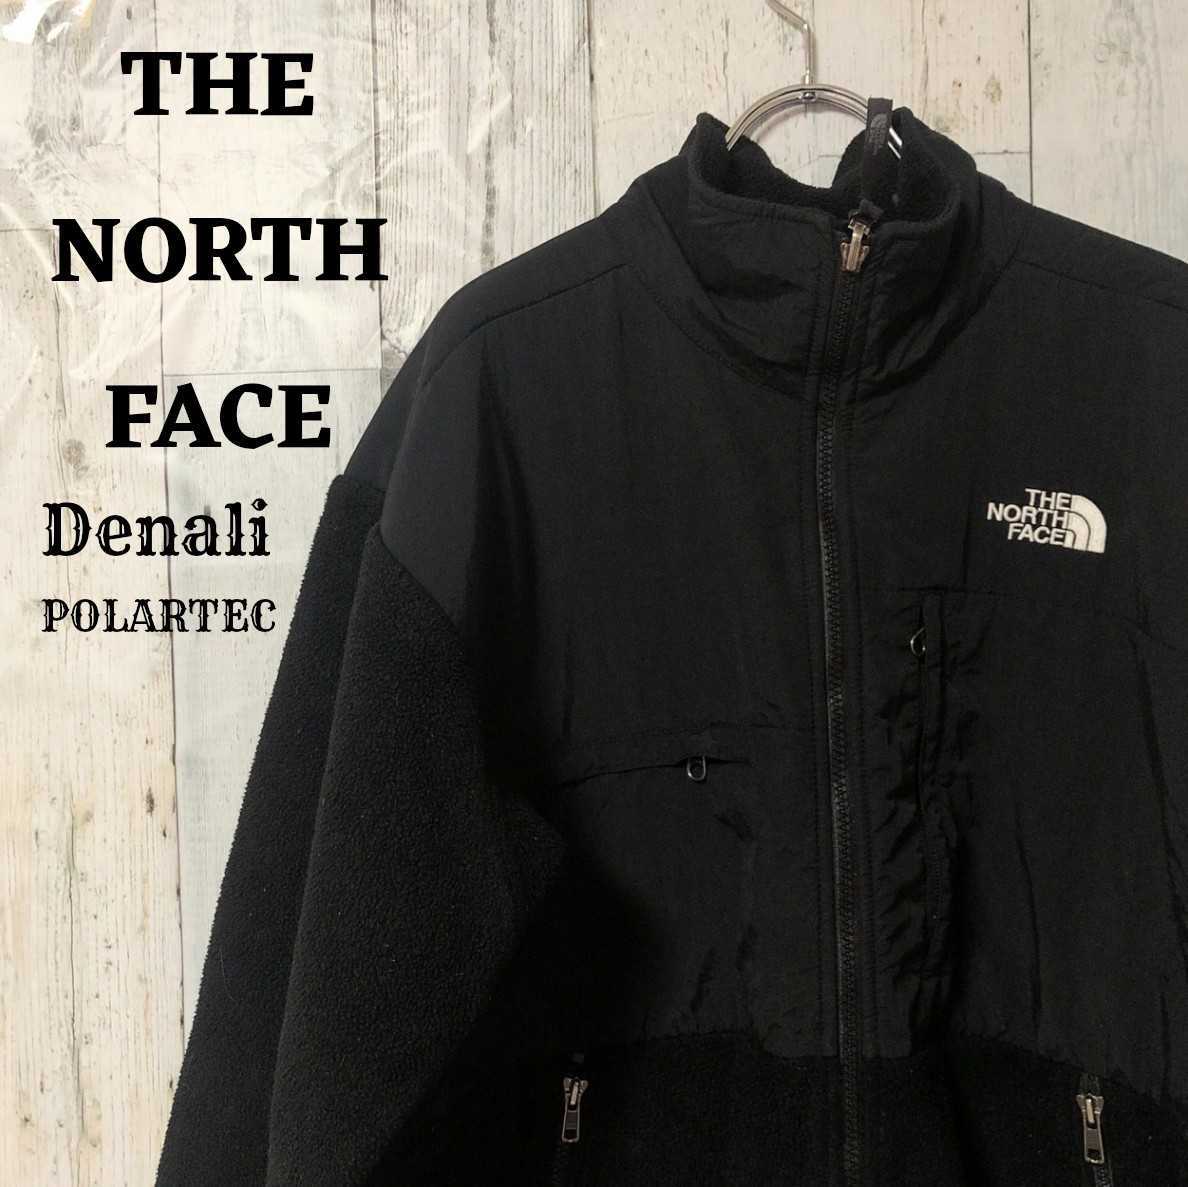 US規格ノースフェイスデナリジャケット黒ブラック刺繍ロゴポーラテックLのサムネイル